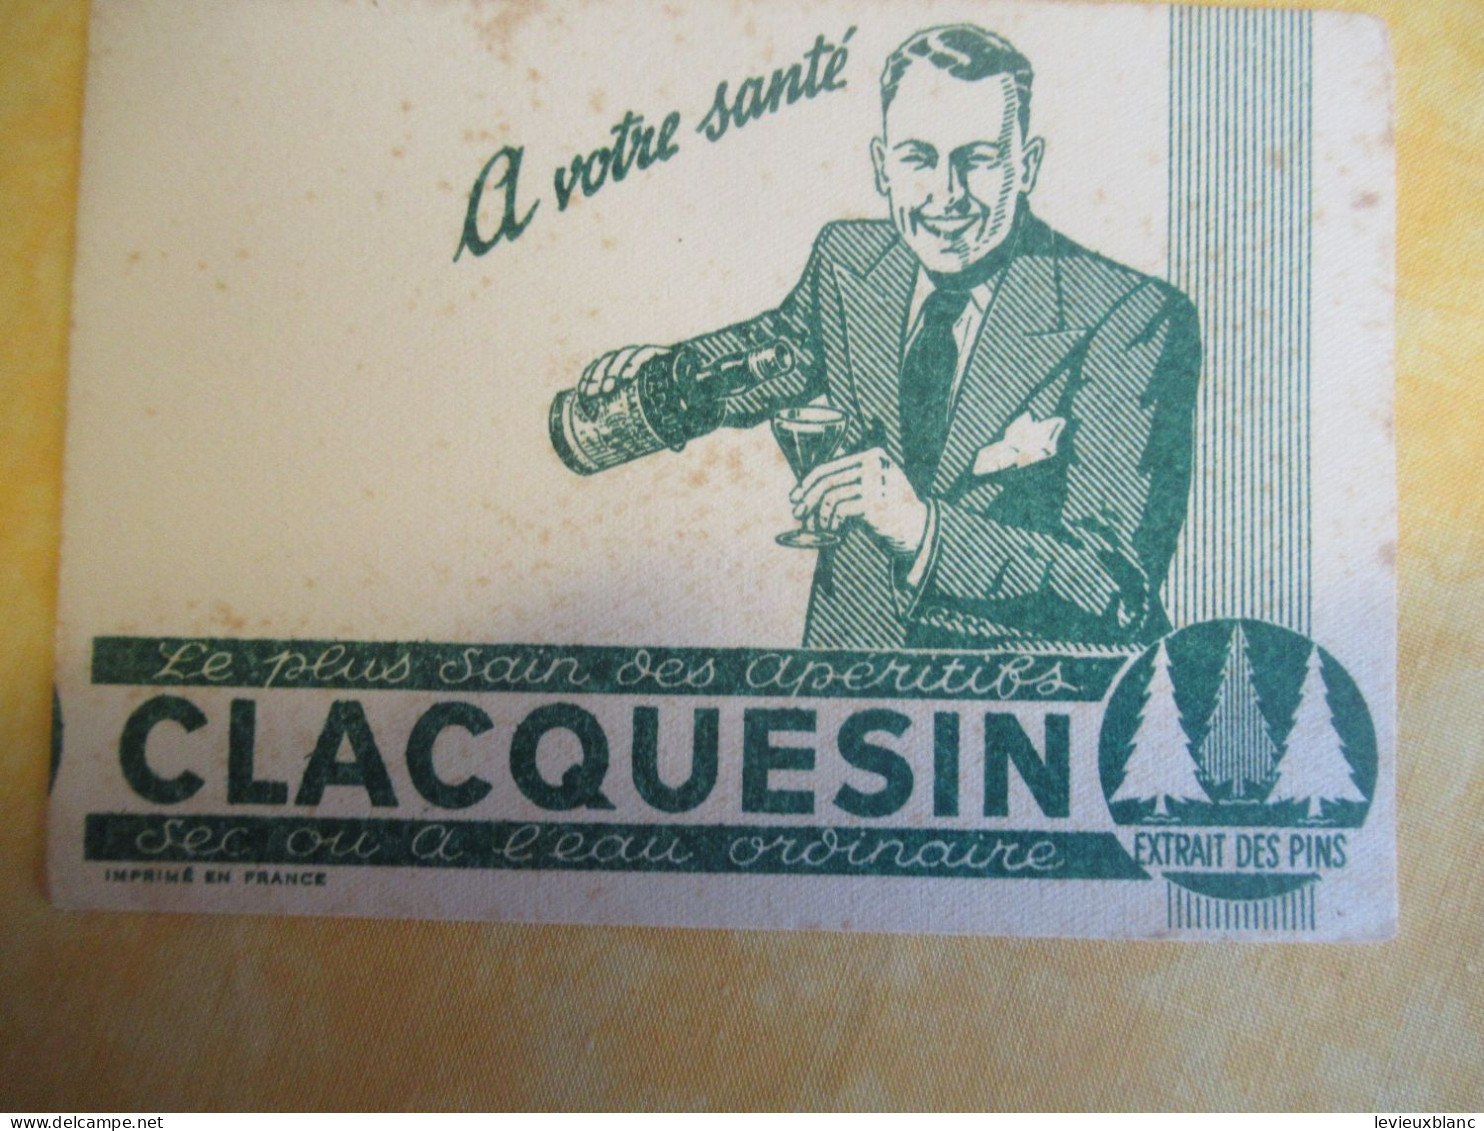 2 Petits Buvards Anciens /Liqueur/CLACQUESIN/ Extrait Des Pins/En été à L'eau Fraîche/Vers 1950-1960      BUV702 - Liquore & Birra